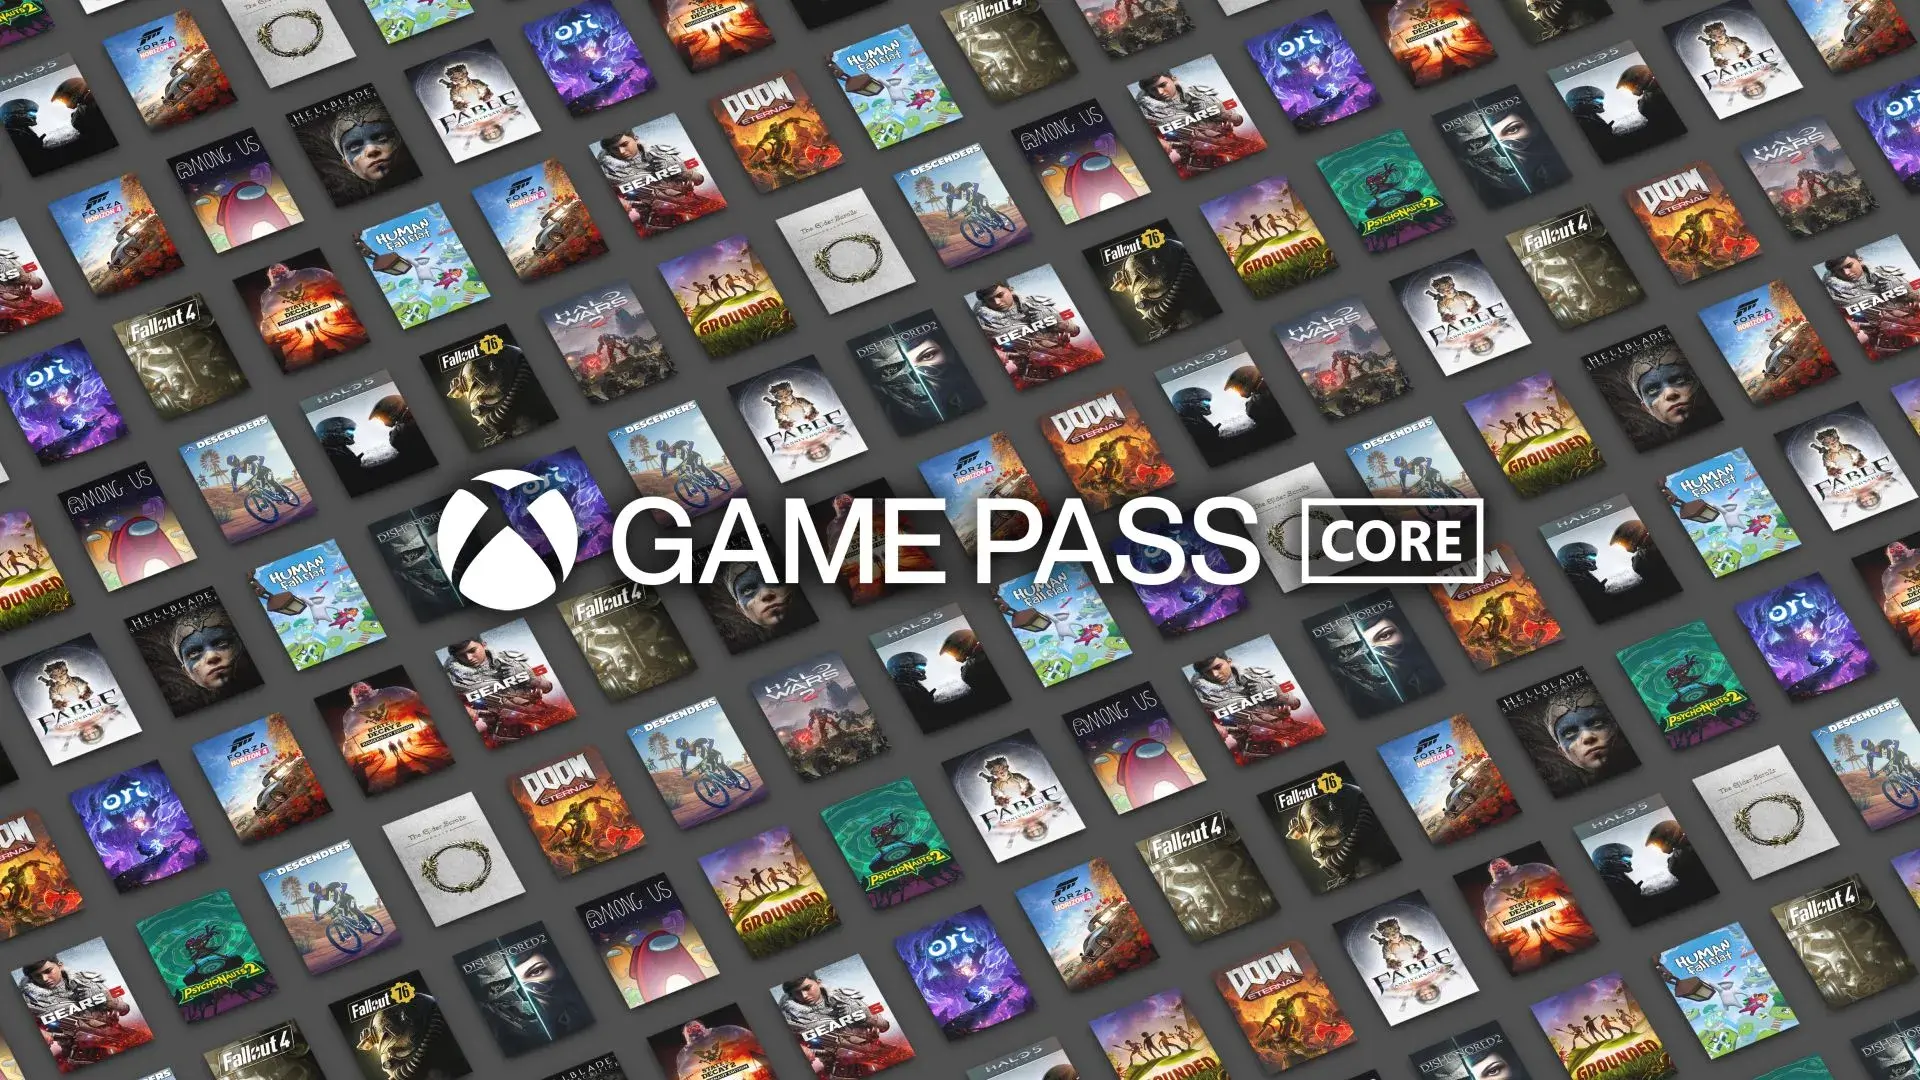 Prepare-se Para a Festa dos Games: Xbox Live Gold Agora é Xbox Game Pass Core!